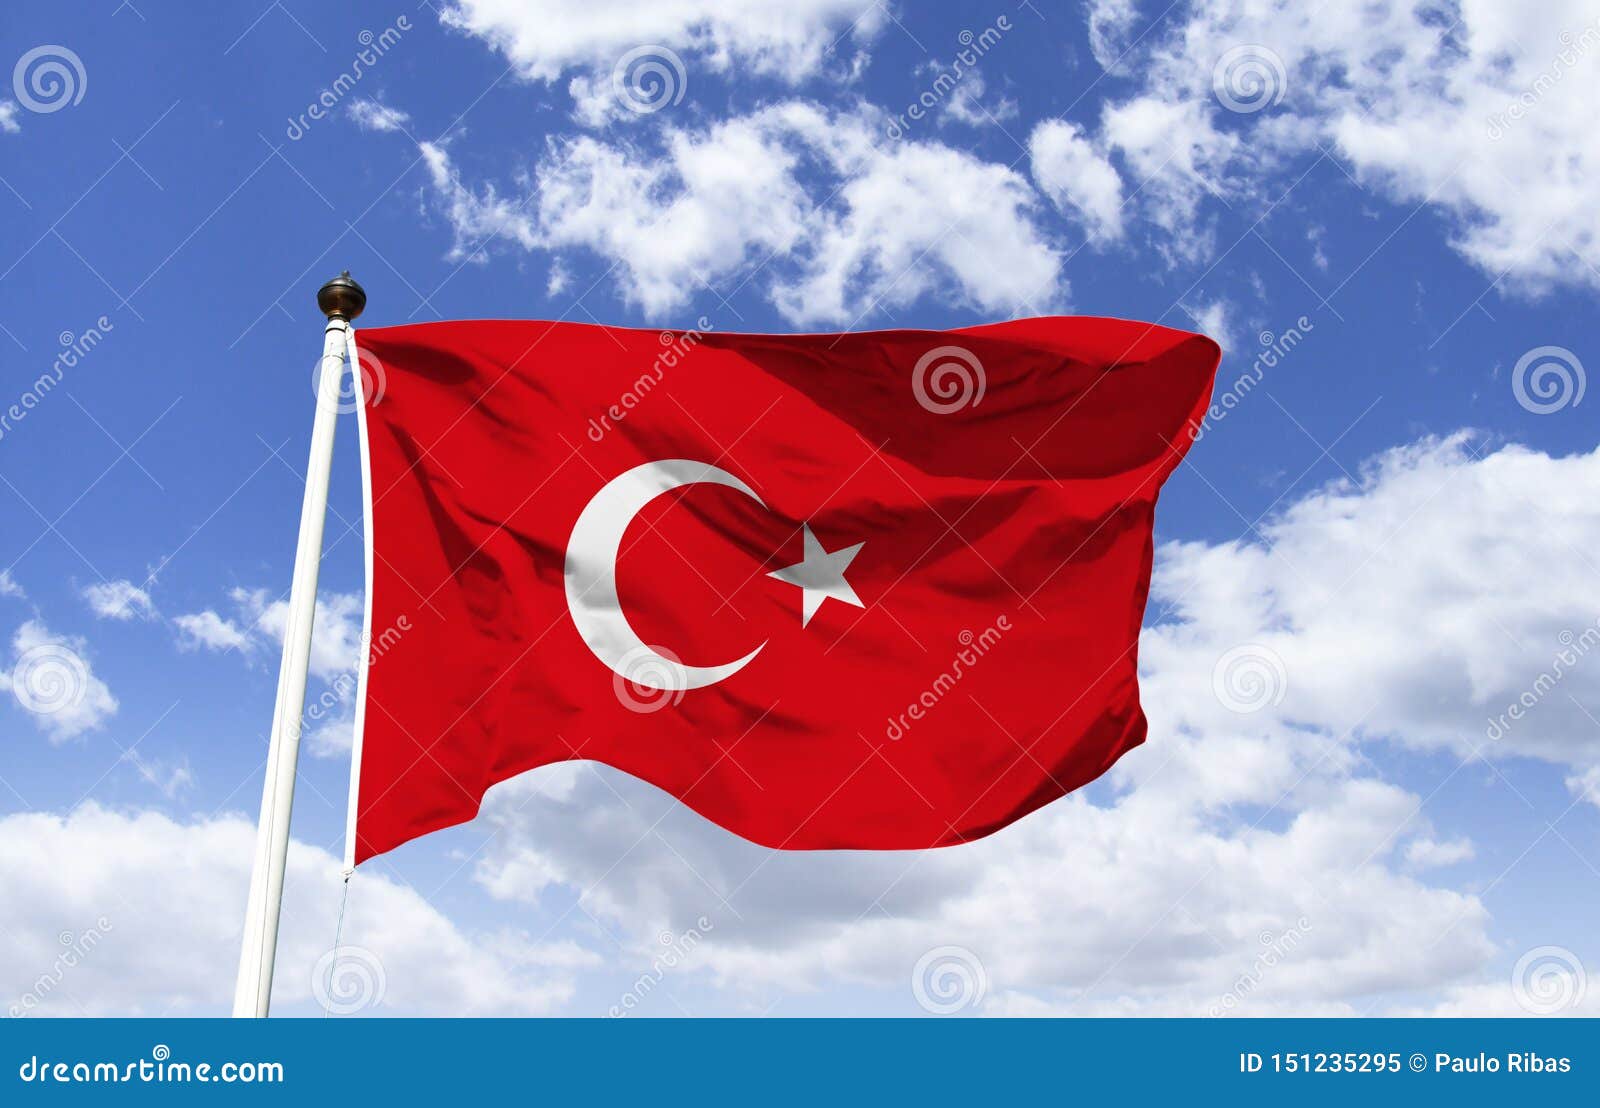 Bandeira De Turquia Bandeira Vermelha Com Lua Da Estrela Imagem De Stock Imagem De Azul Islamica 151235295